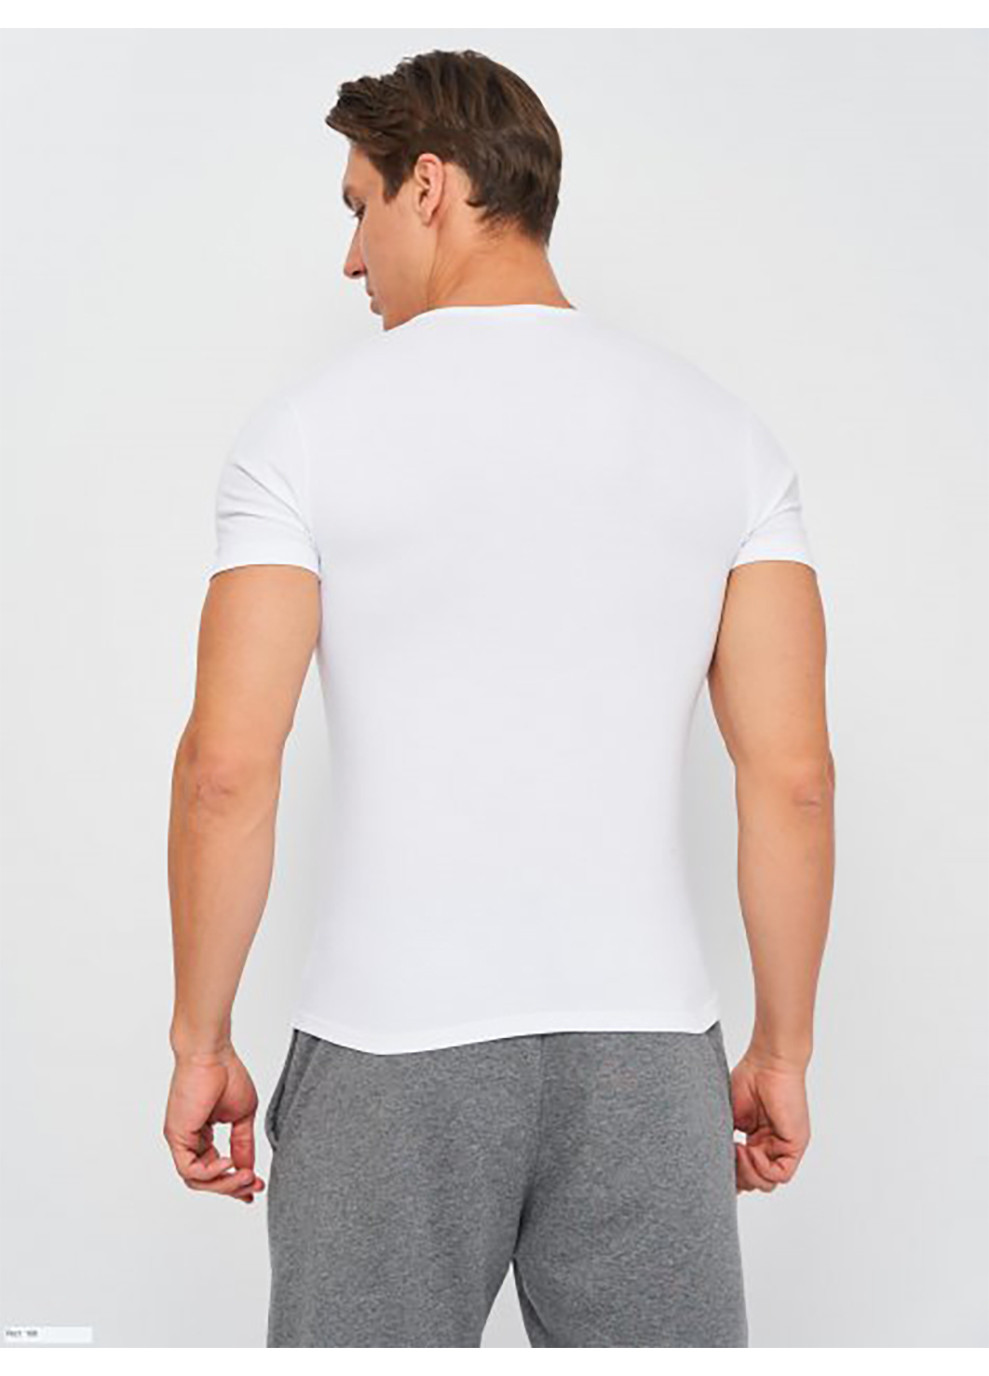 Біла футболка t-shirt mezza manica girocollo білий m чоловік k1305 bianco-m Kappa